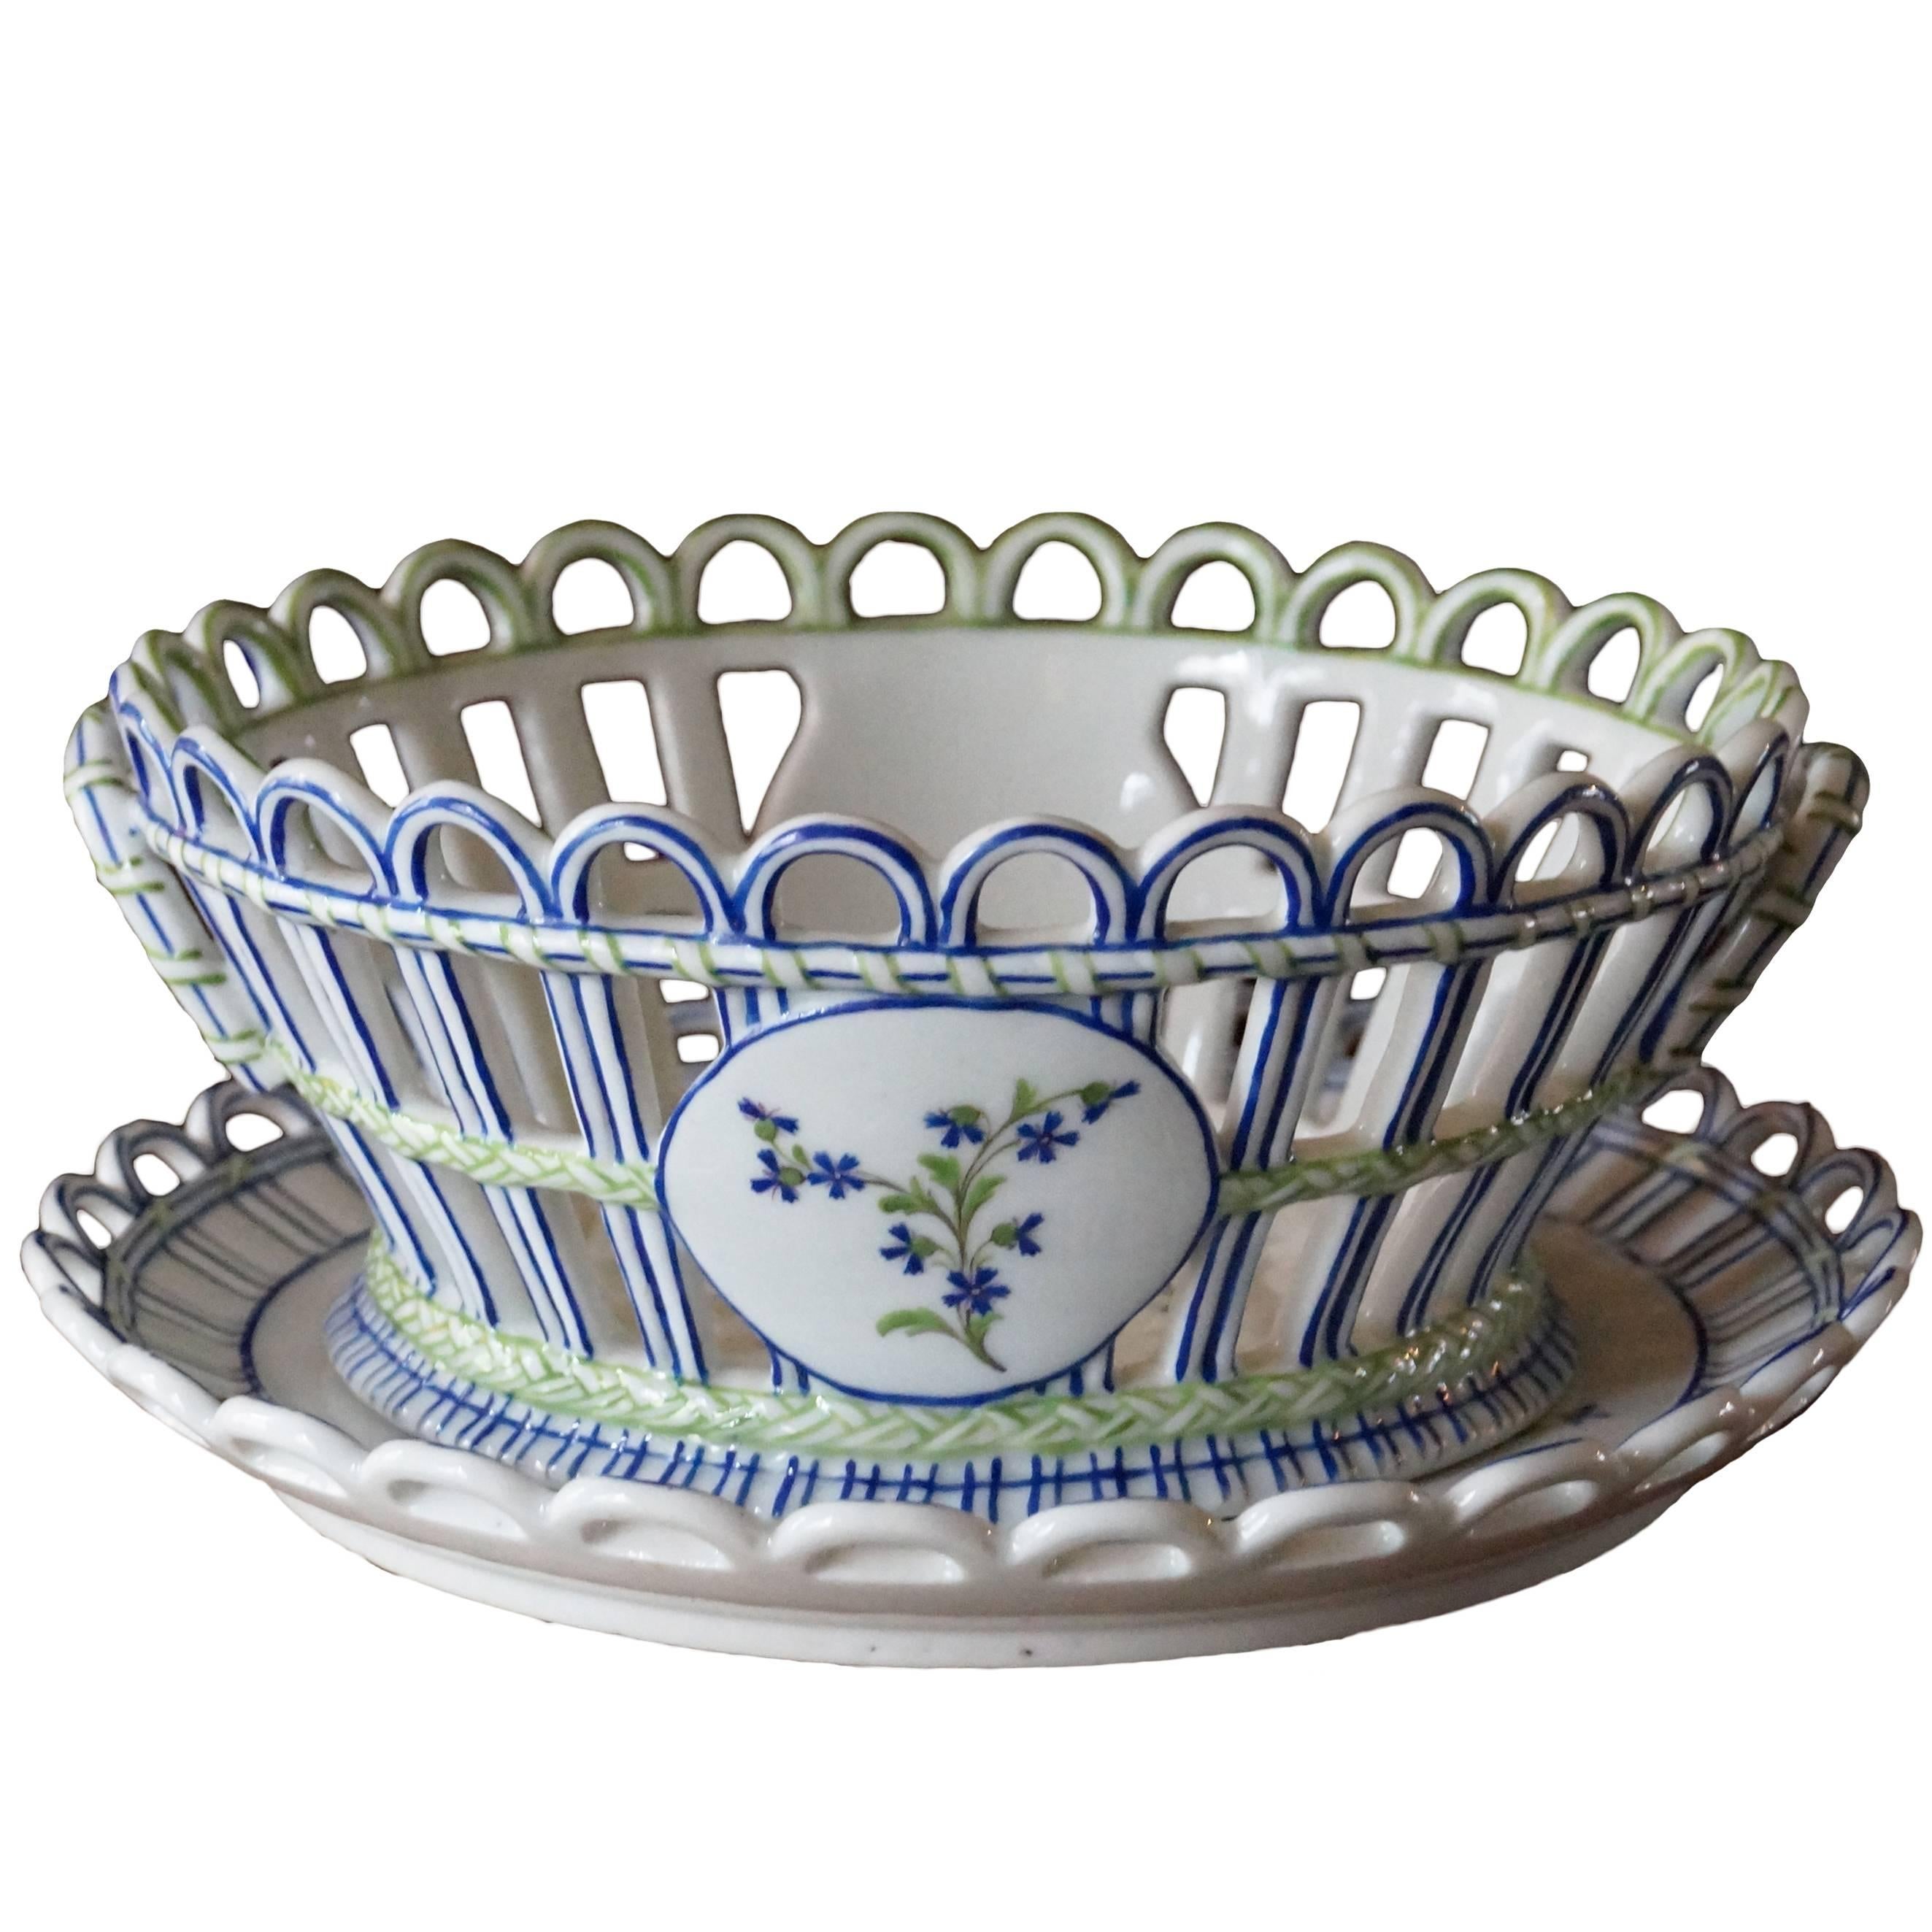 Unique and Antique Niderviller Porcelain Basket with under Plate, France, 1790s